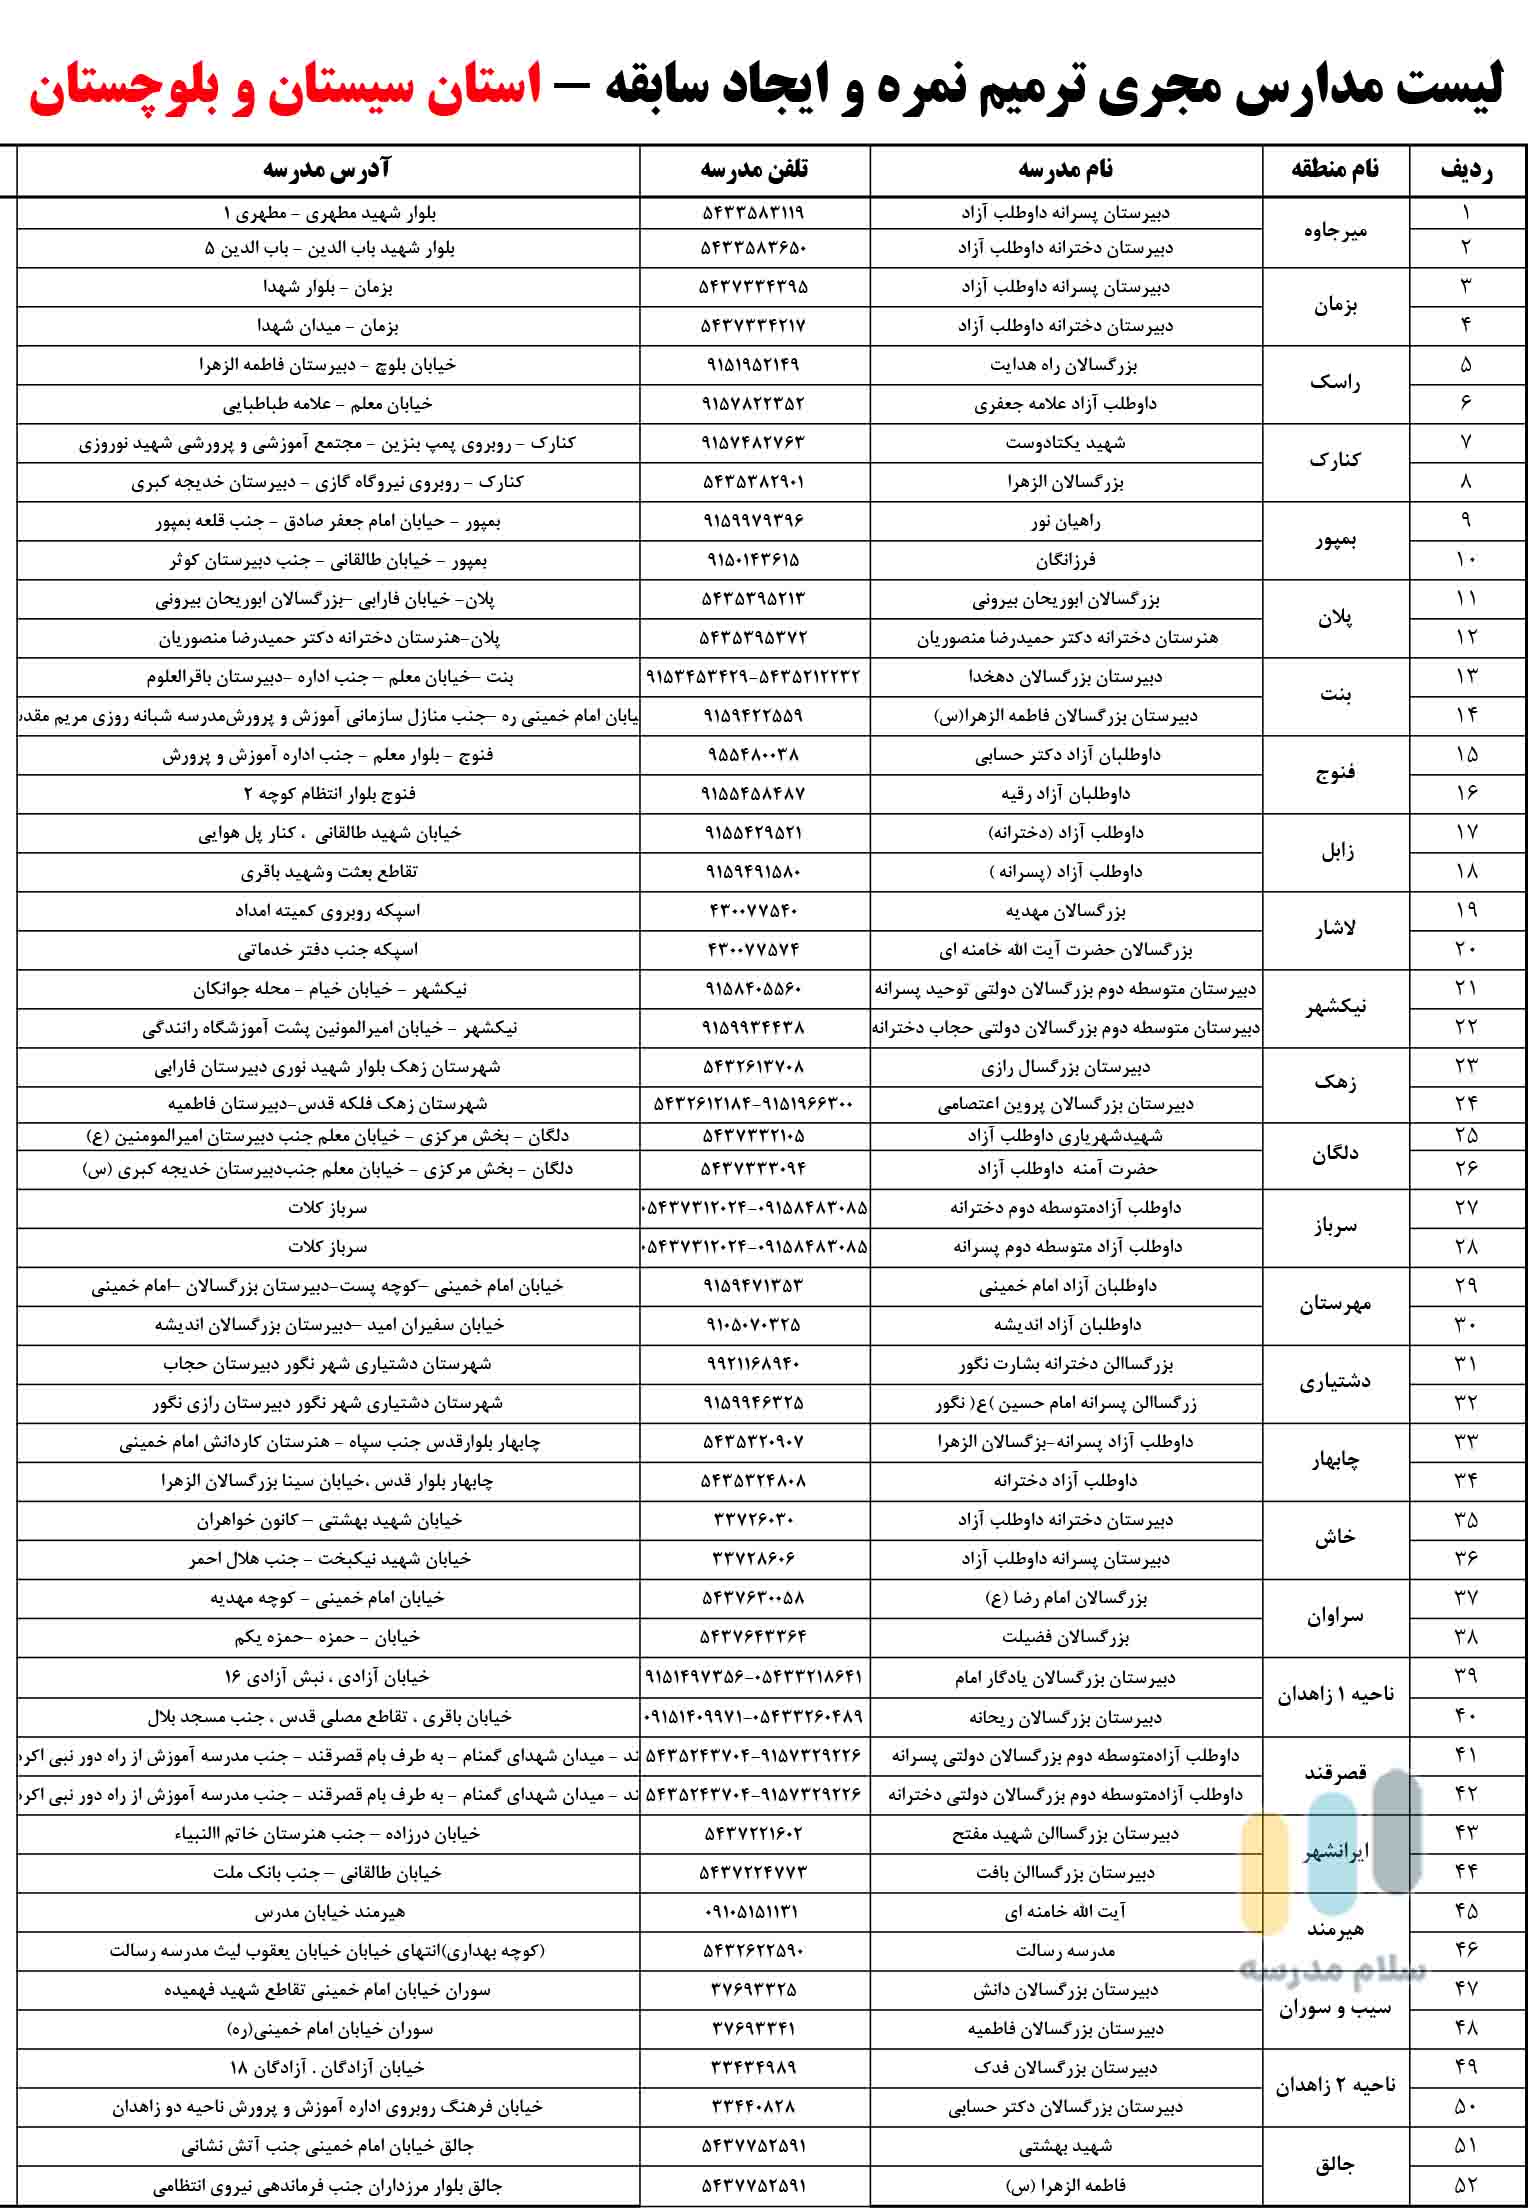 لیست مدارس بزرگسالان داوطلب آزاد مجری ثبت نام امتحان ترمیم نمره در استان خراسان سیستان و بلوچستان